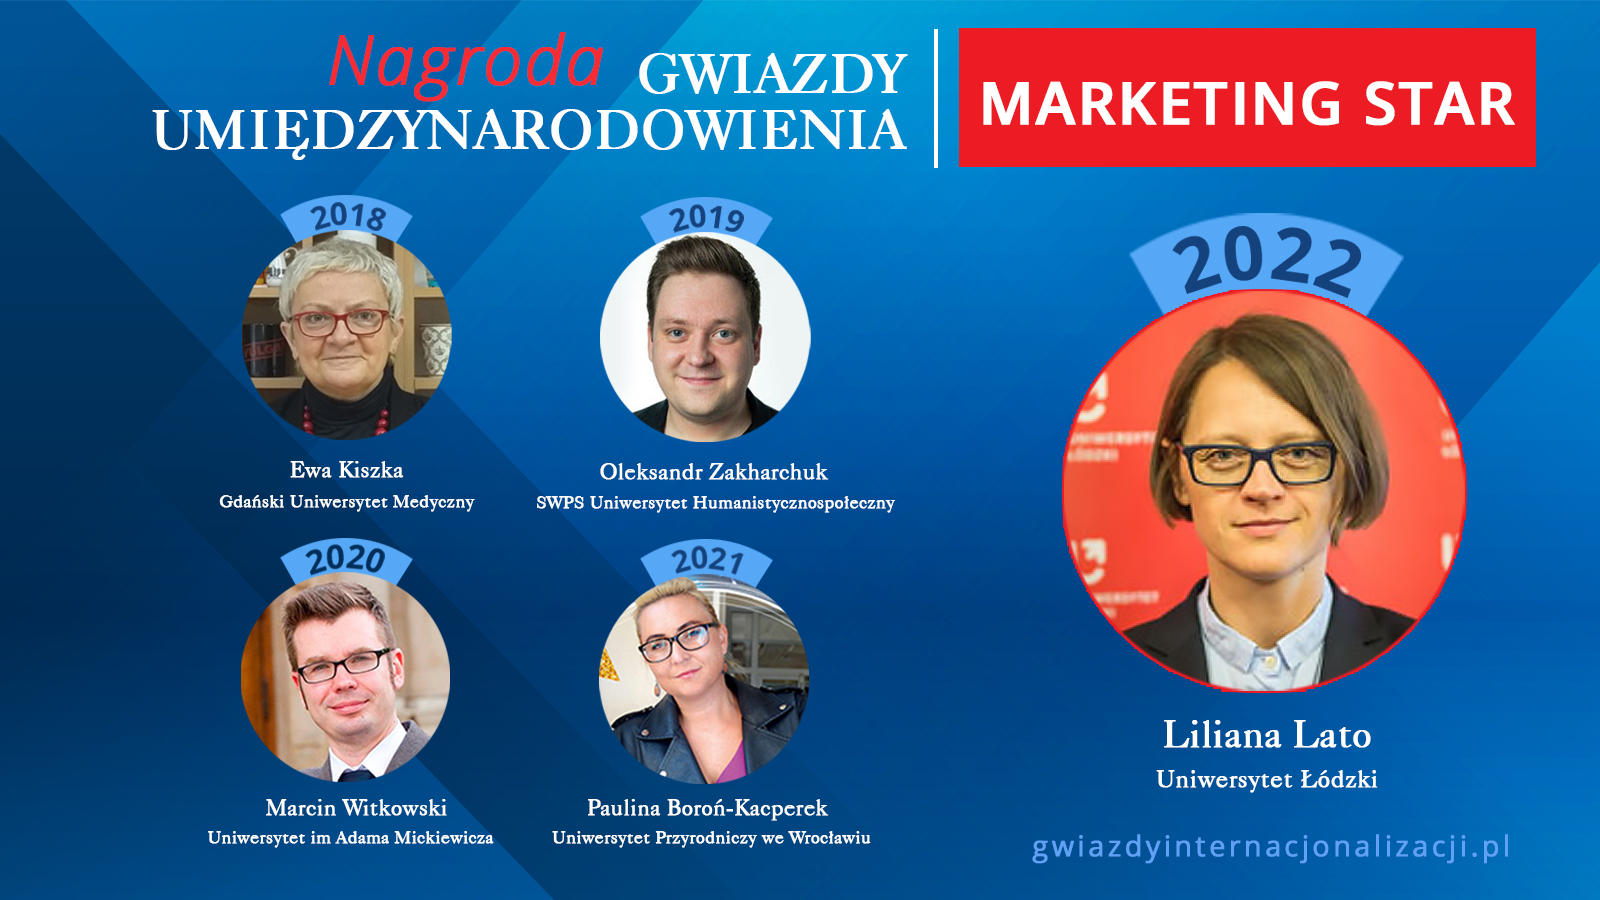 Gwiazda Marketingu / MARKETING STAR 2022 - Liliana Lato